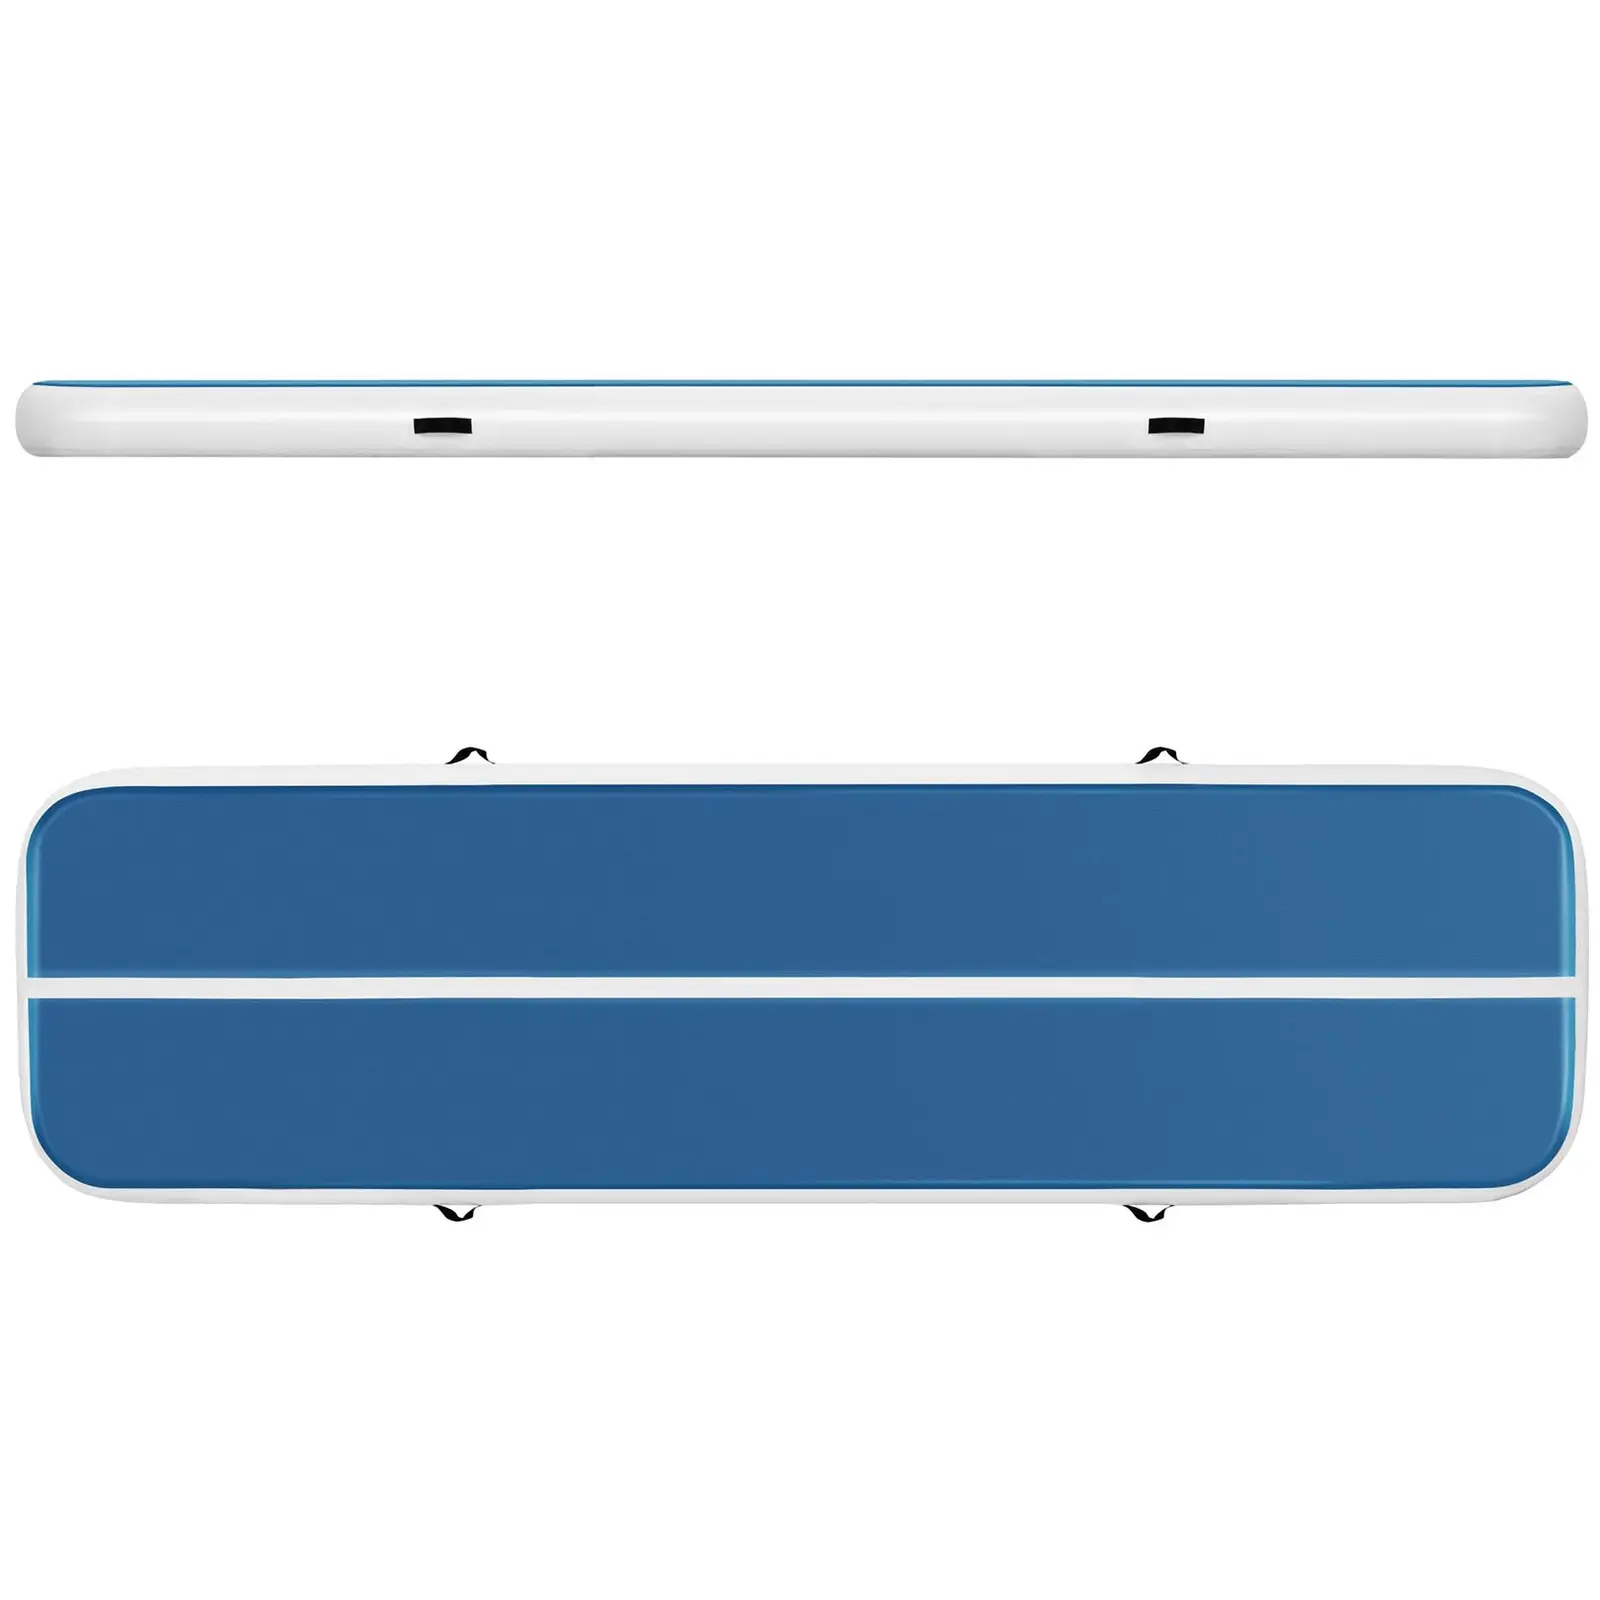 Felfújható tornaszőnyeg - 400 x 100 x 20 cm - 200 kg - kék/fehér